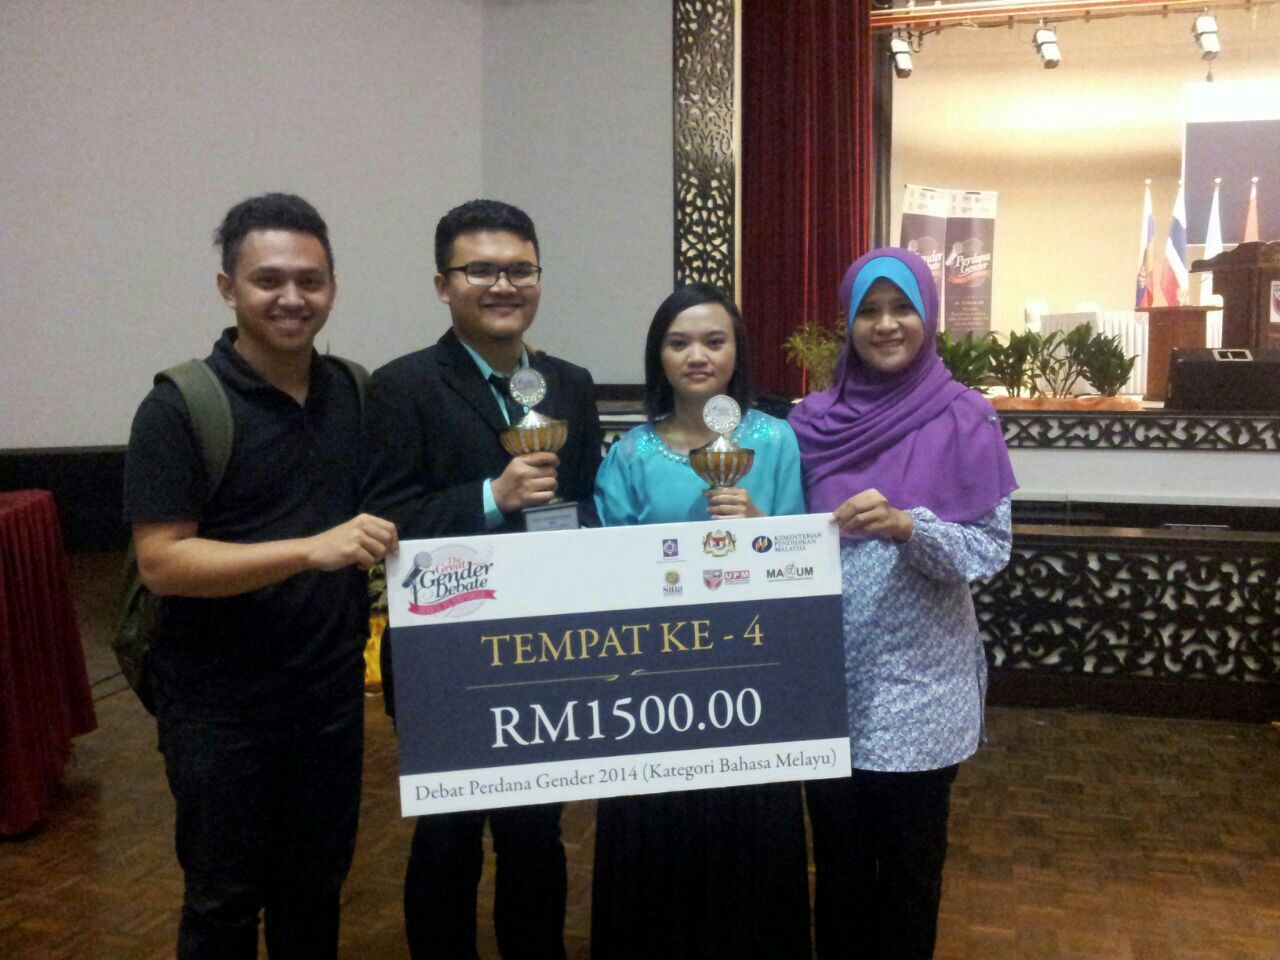 Pasukan UMS meraih tempat ke-4 dan membawa pulang trofi dan wang RM1500